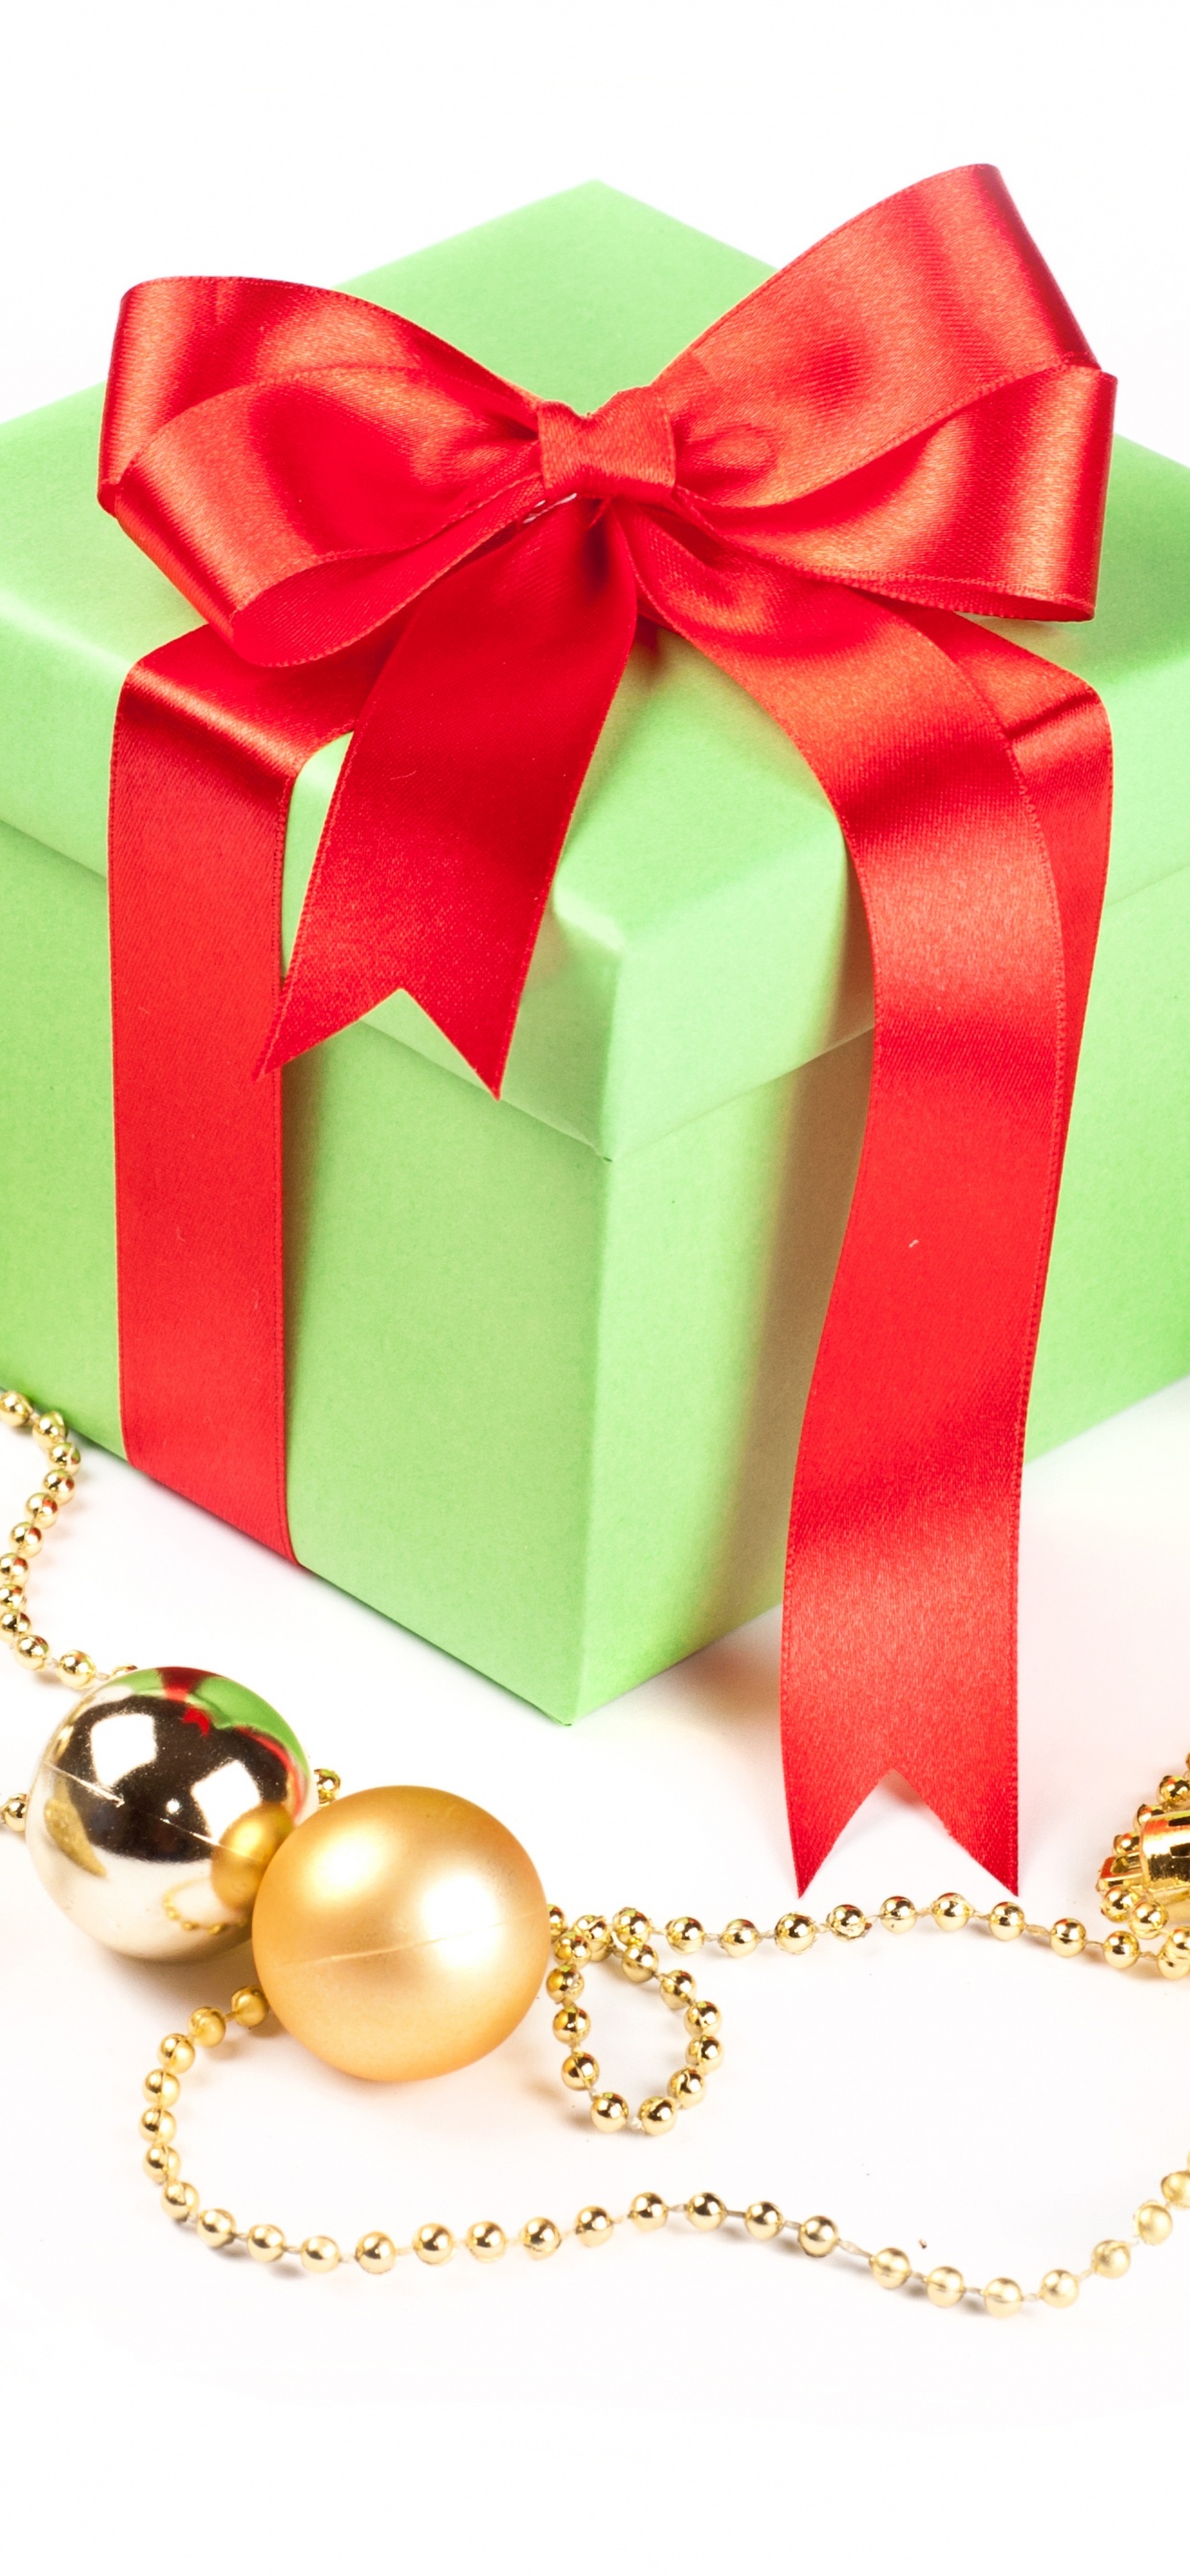 圣诞节的装饰品, 礼物, 圣诞节那天, 新的一年, 礼品包装 壁纸 1242x2688 允许